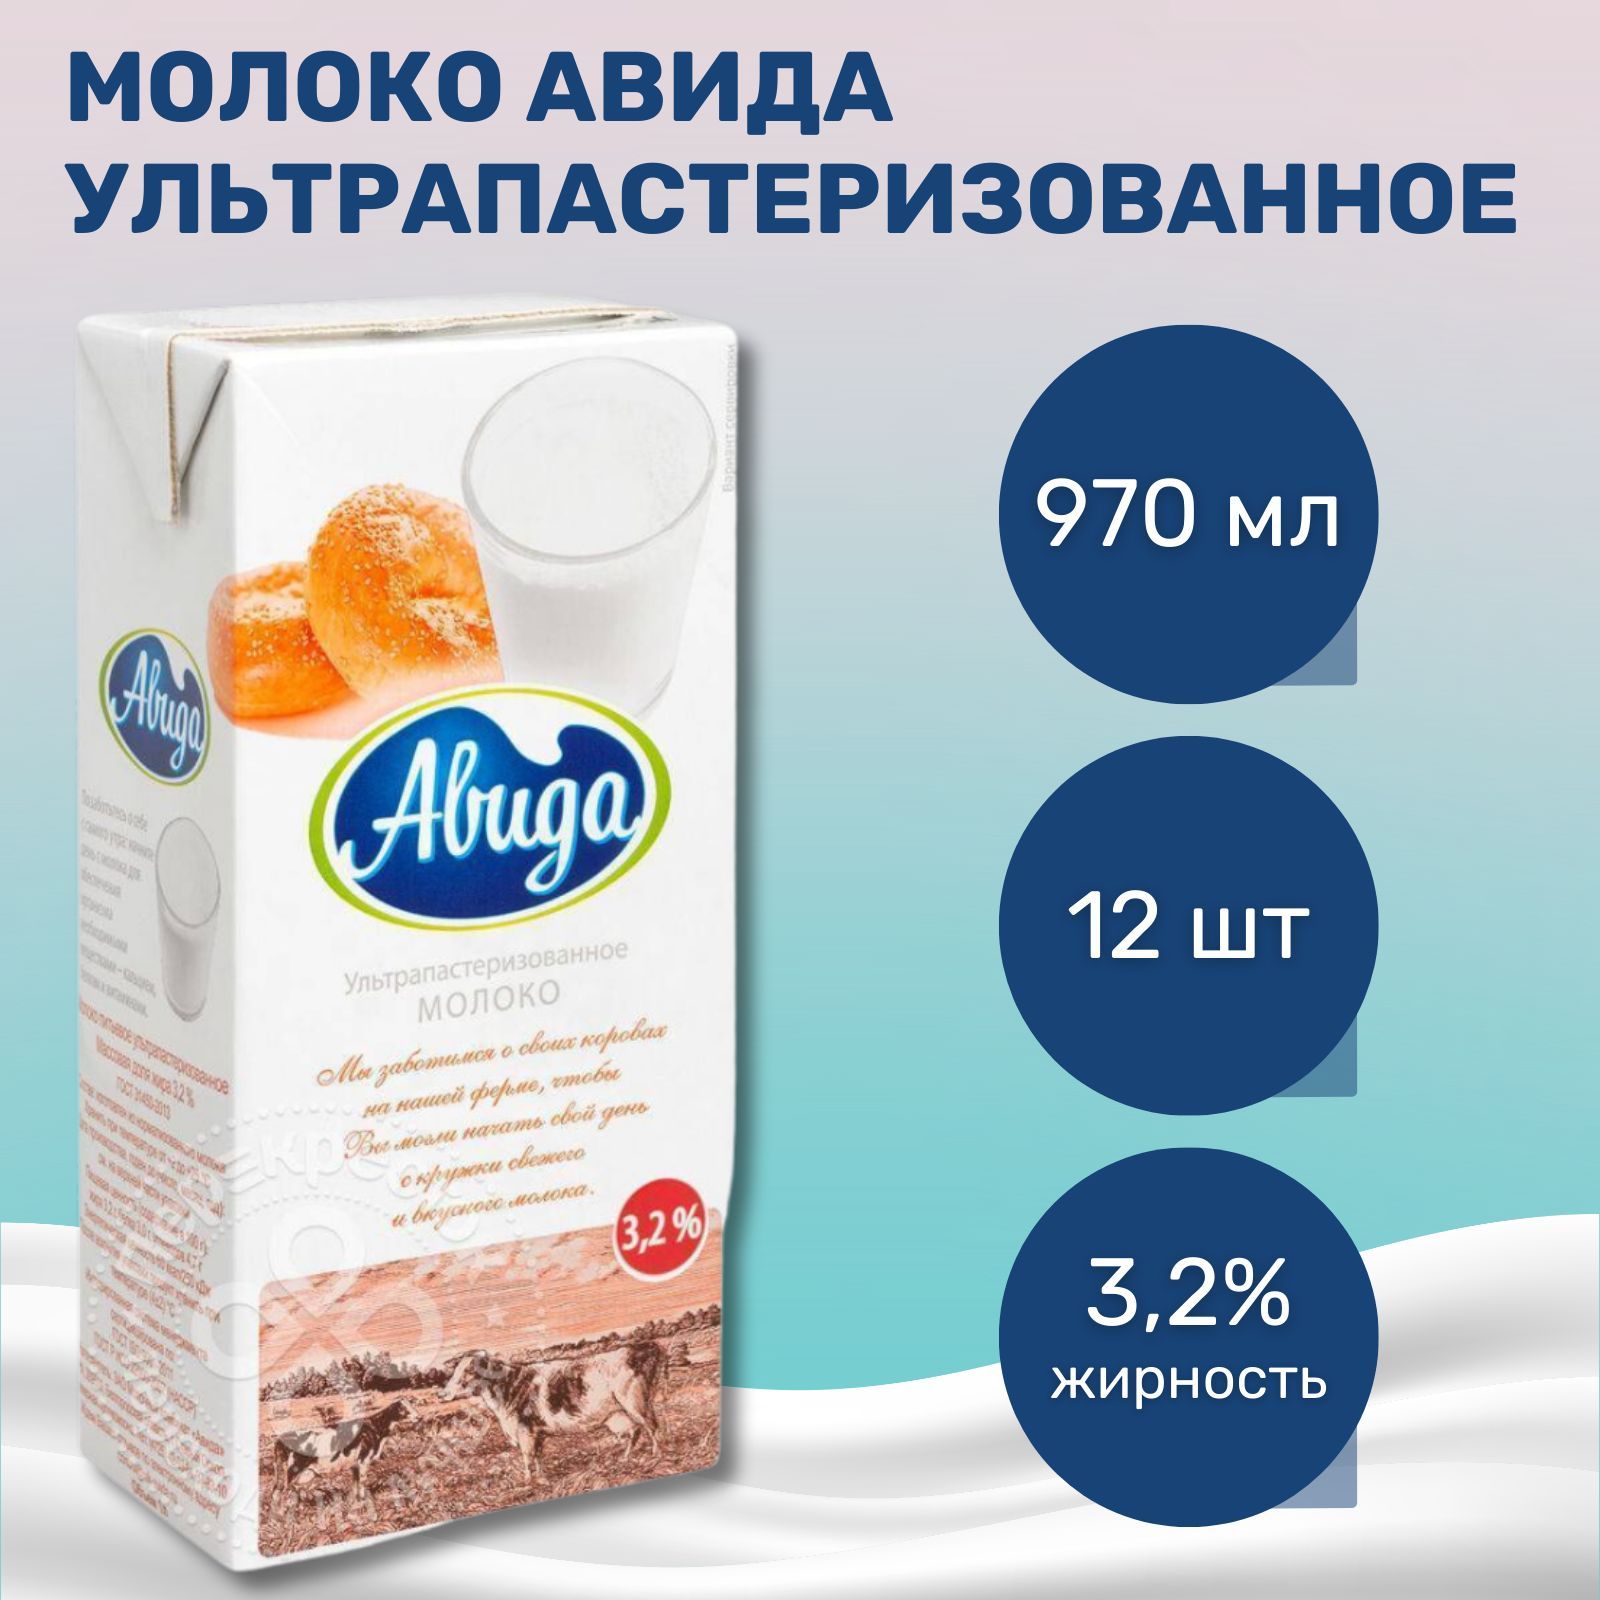 Молоко авида. Молоко Авида 3.2. Молоко Авида 2,5% 970мл. Молоко Авида отзывы. Молоко Авида 3.2 отзывы.